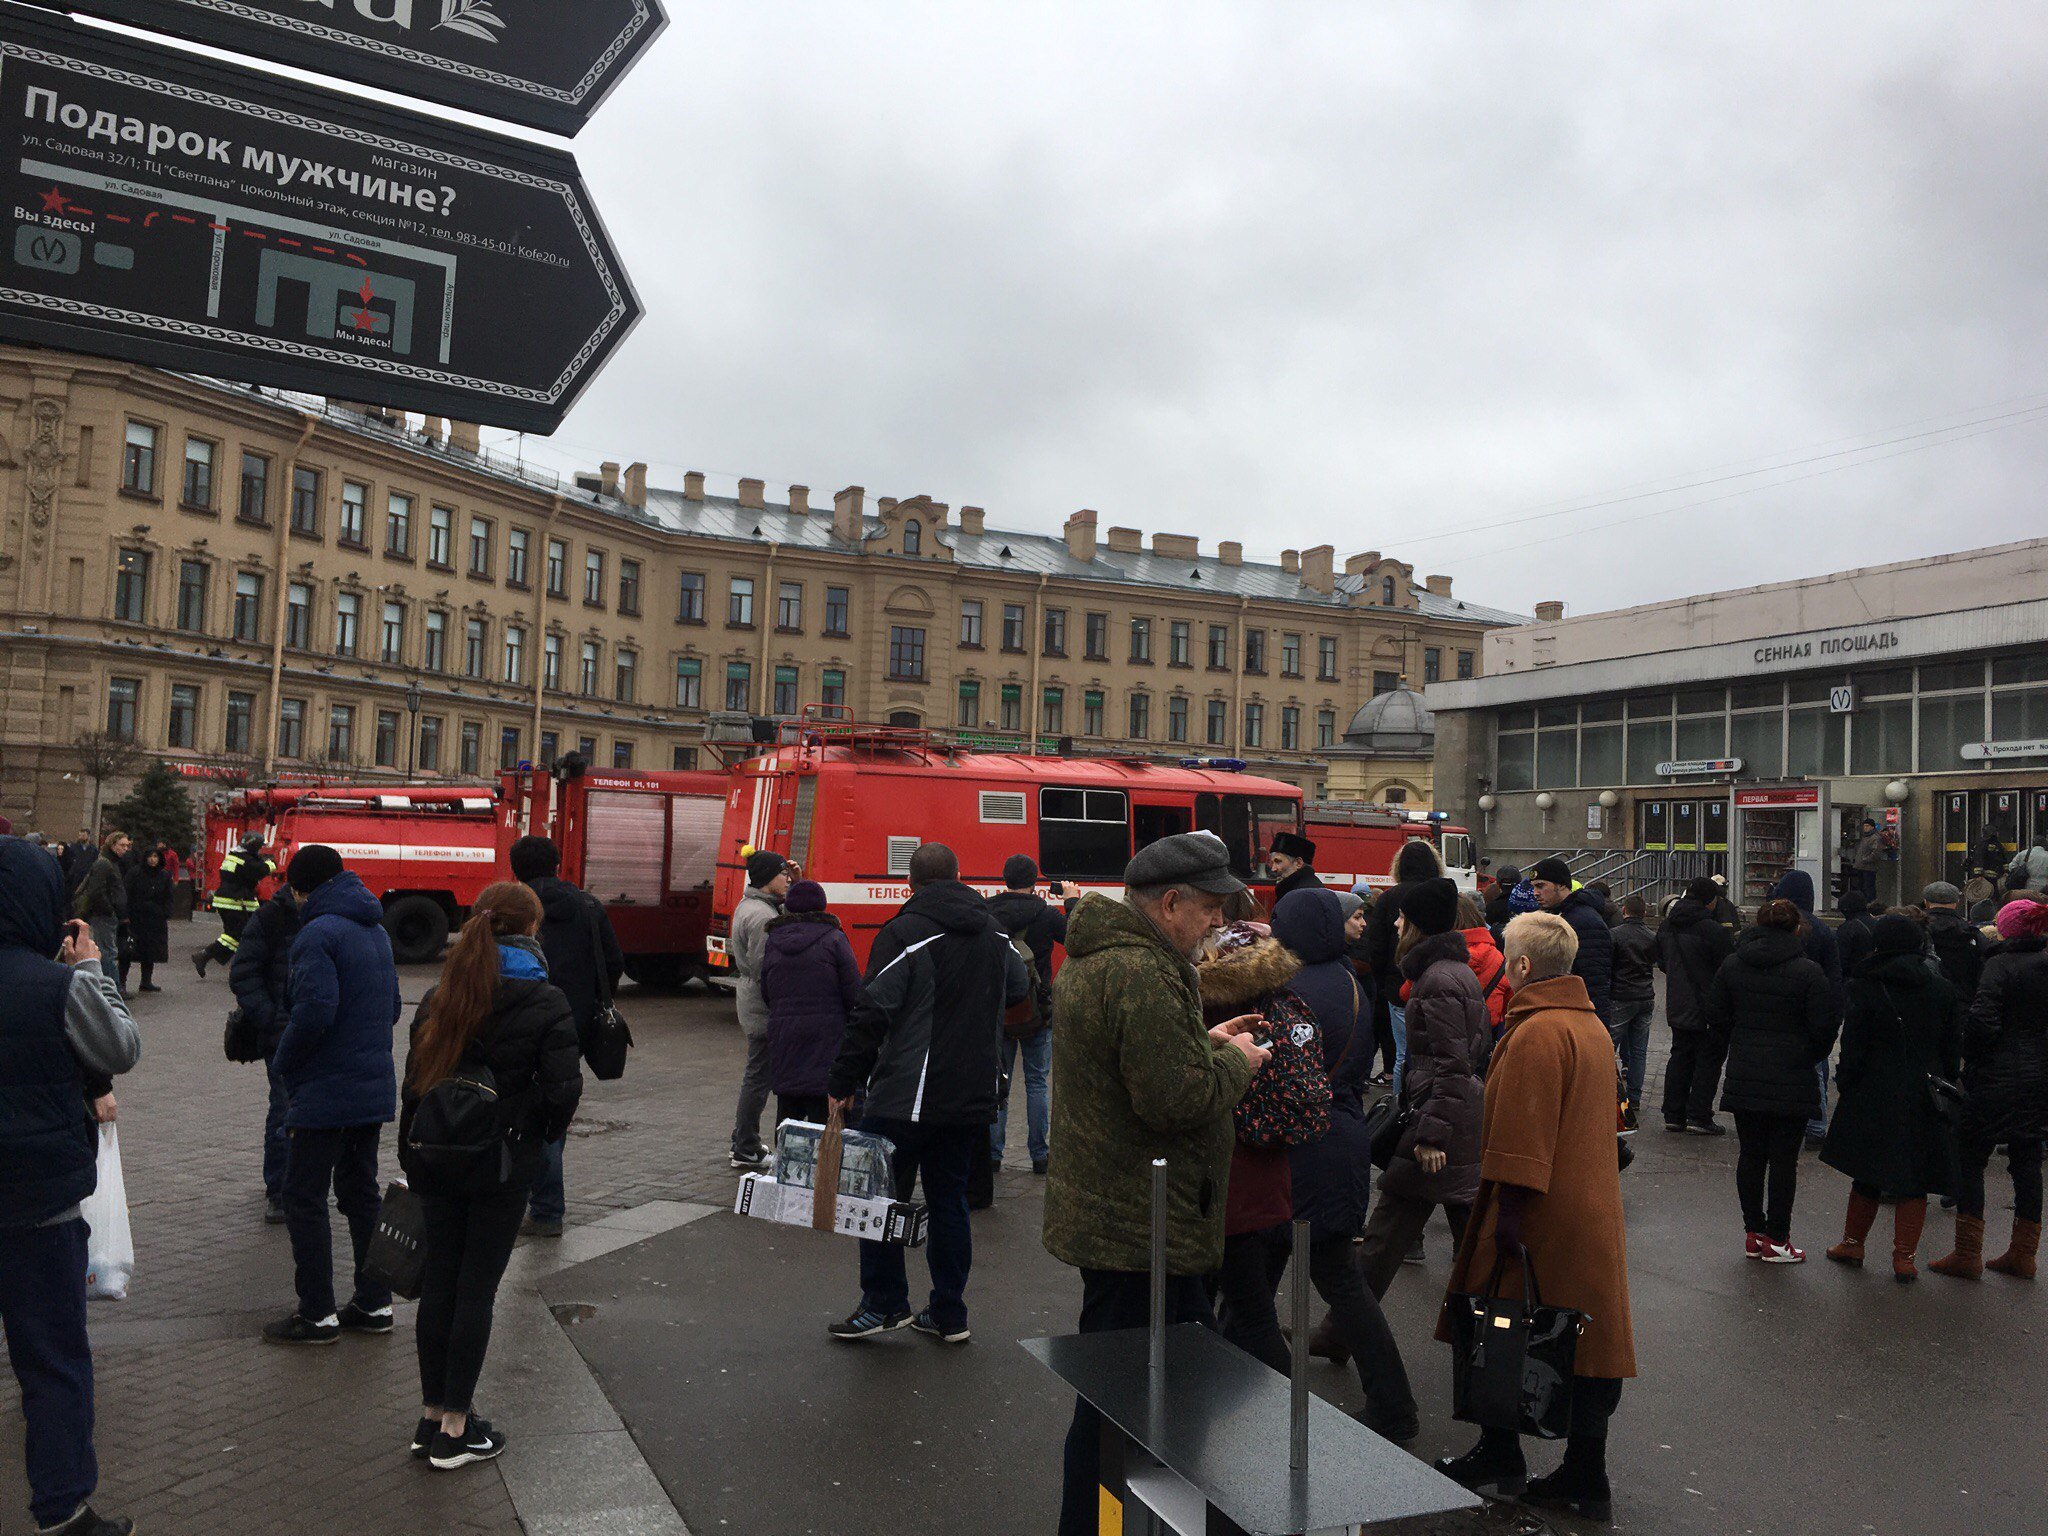 Метро Санкт-Петербурга толпа. Новости Москвы сегодня взрыв в метро. Пл тела